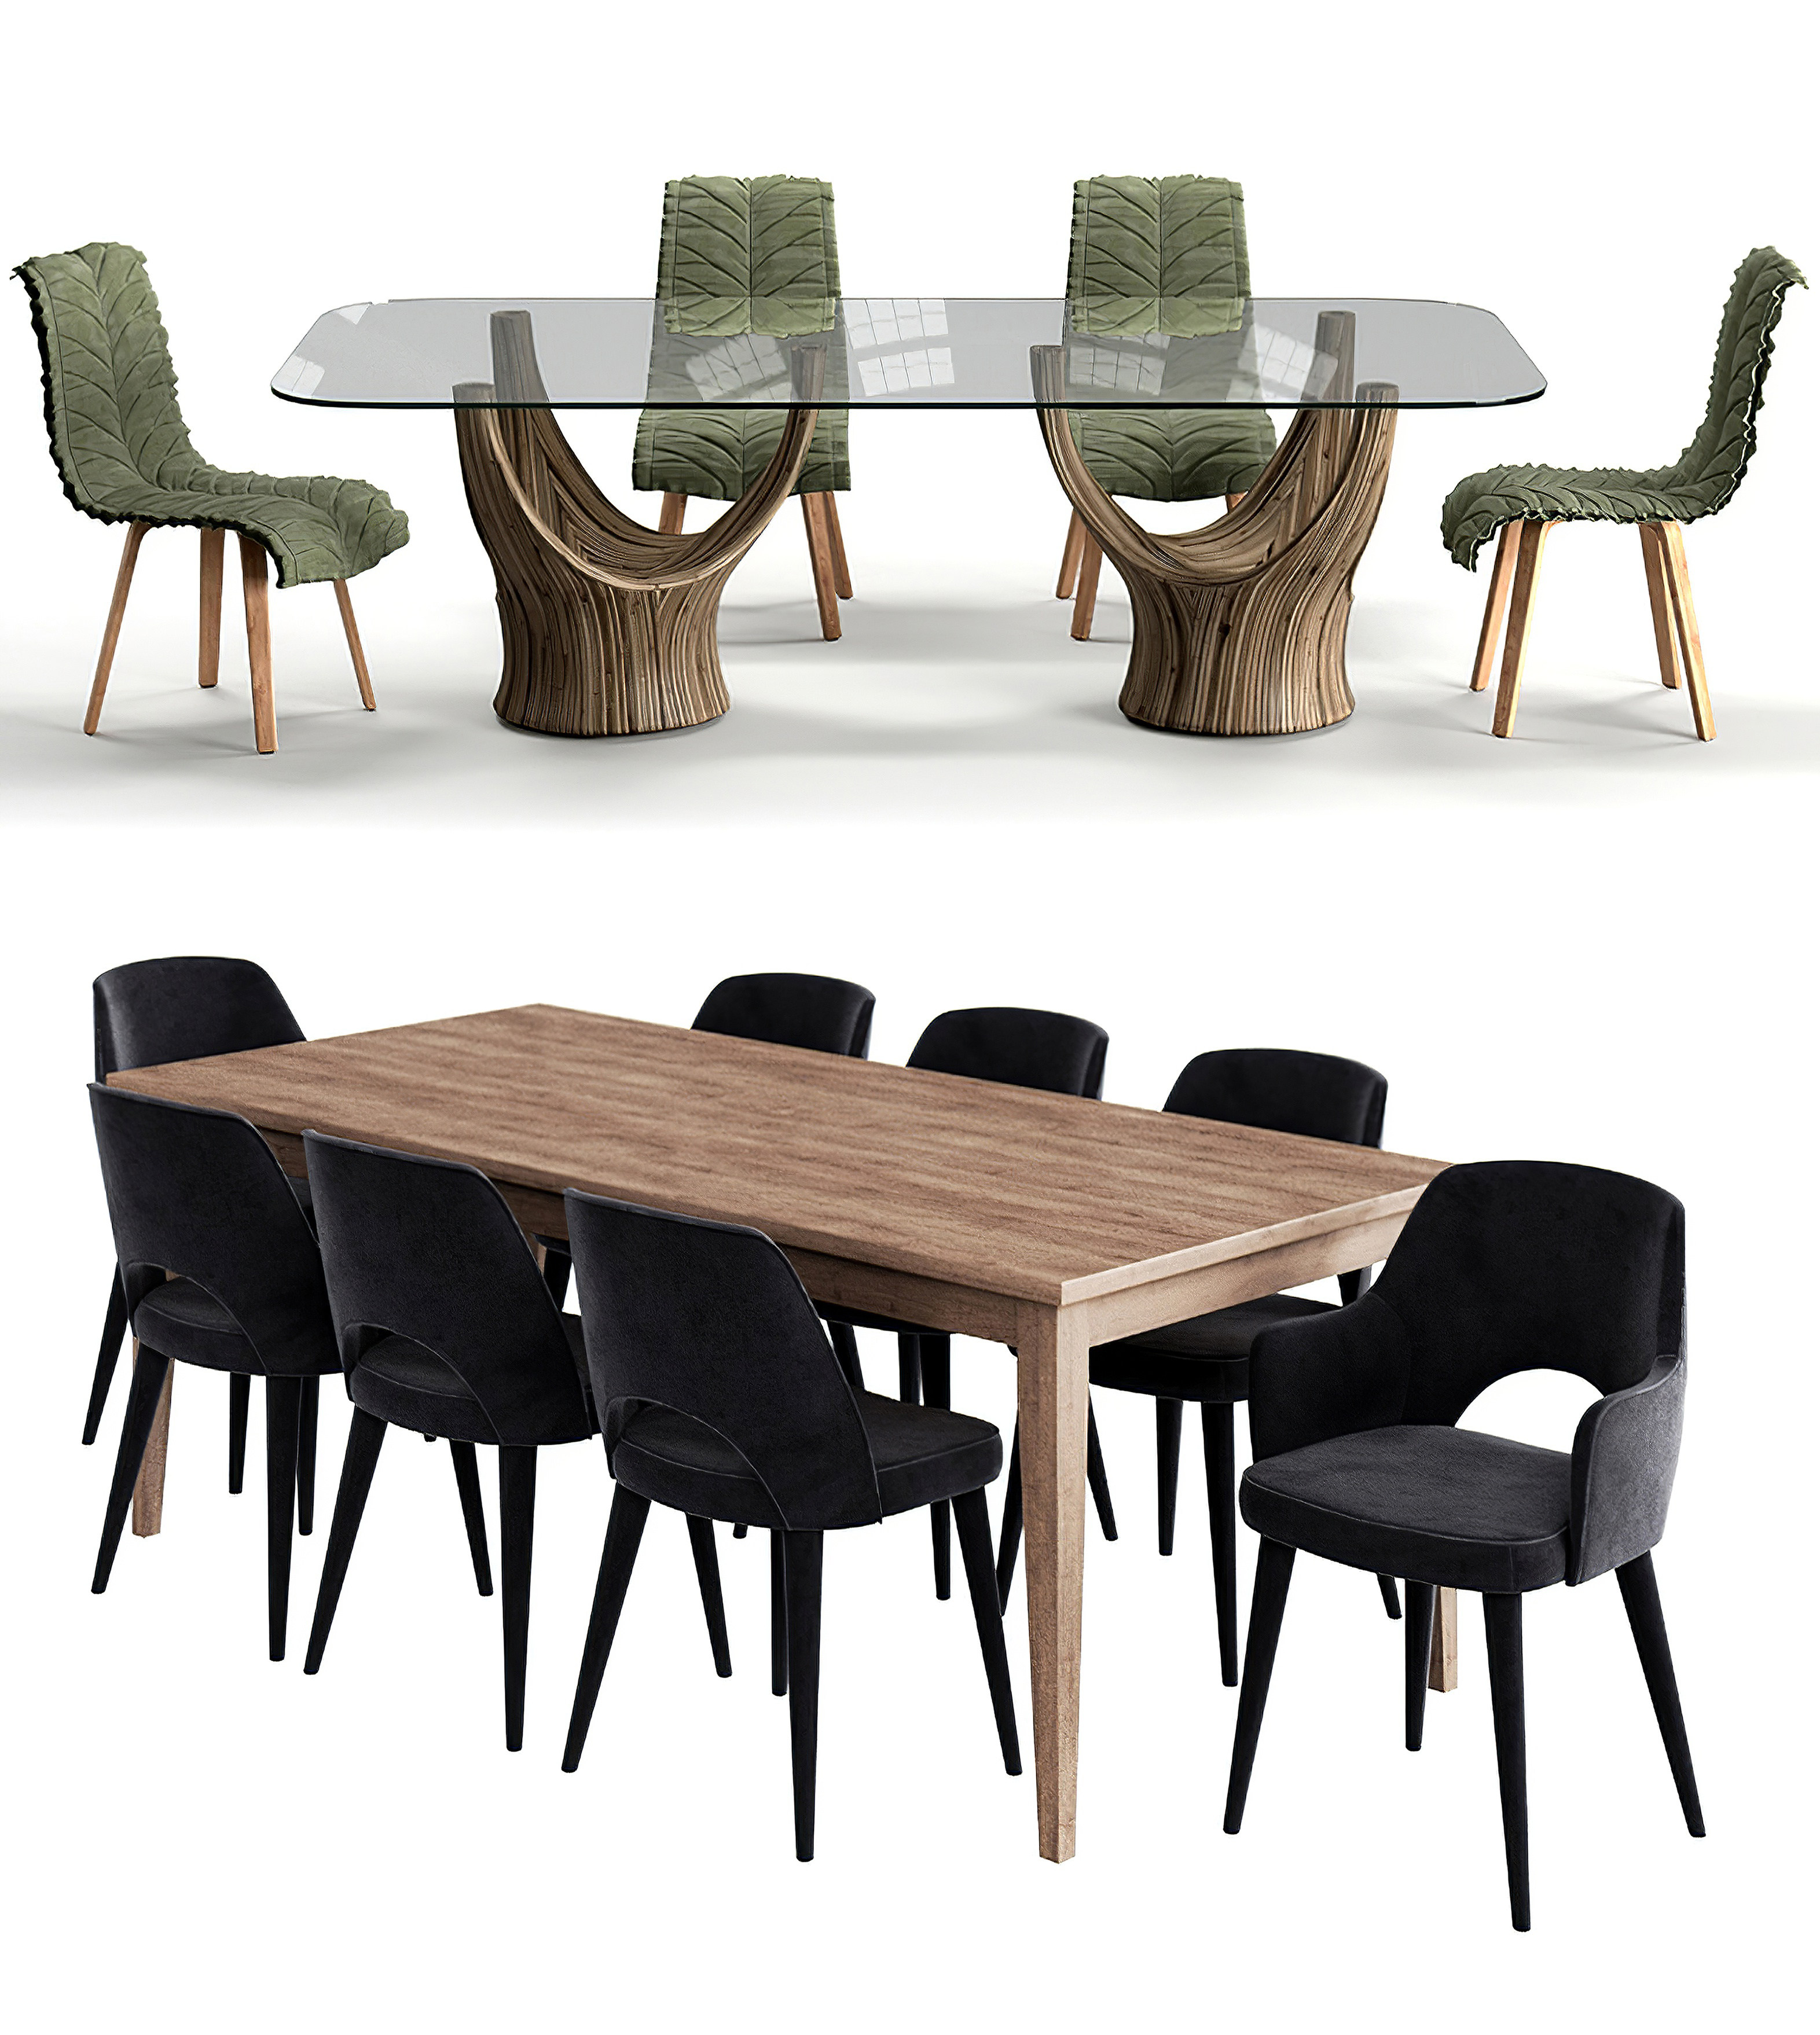 08现代餐桌椅组合,方形餐桌,布艺餐椅,树叶造型布艺餐椅3d模型下载